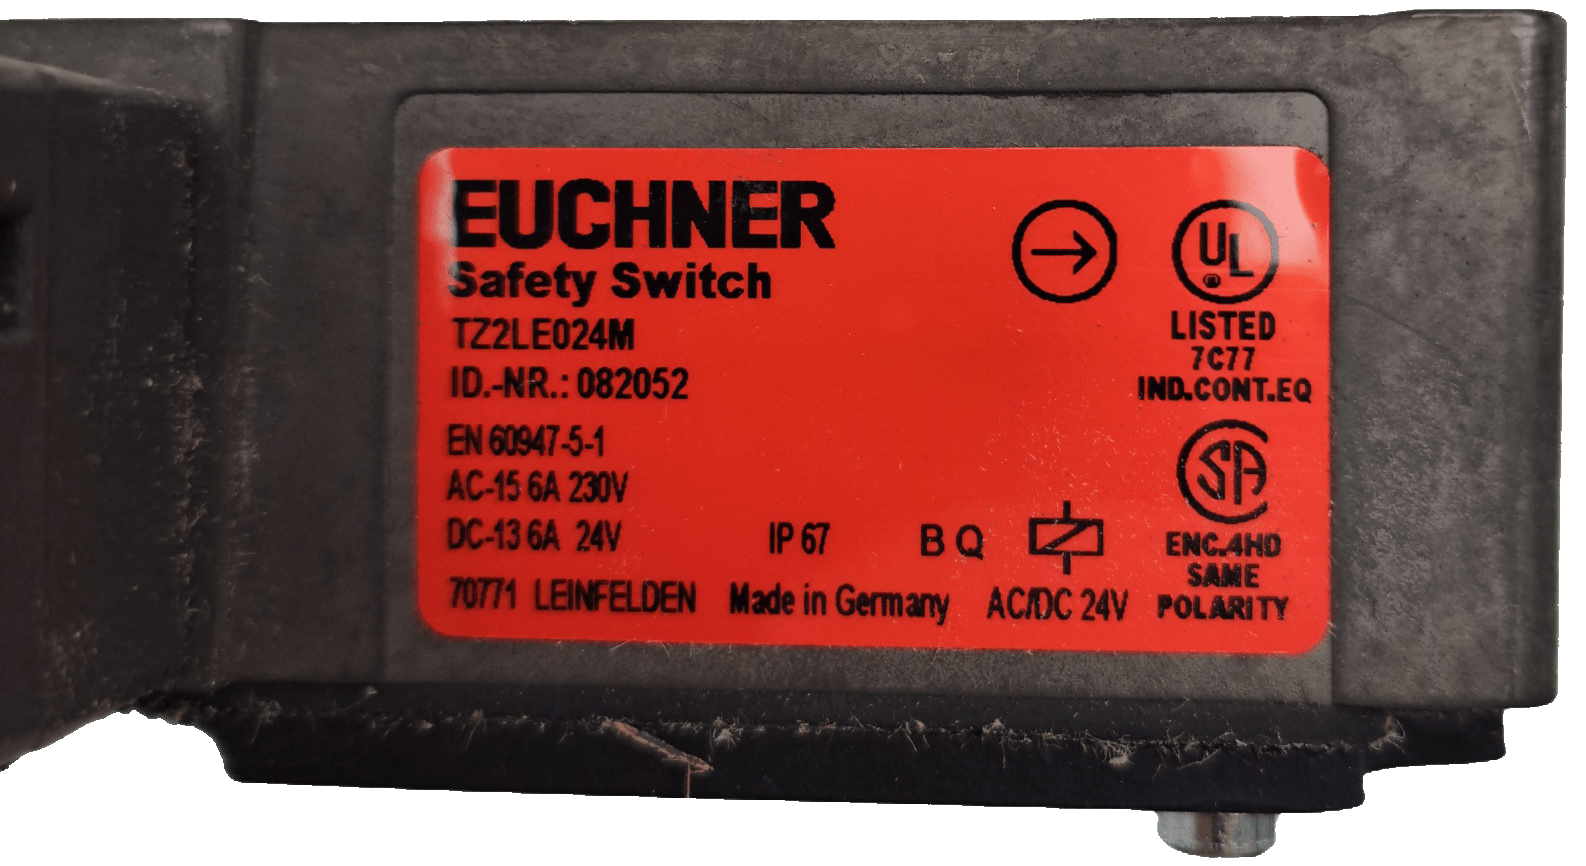 Euchner Elektromechanische Sicherheitsschalter mit Zuhaltung TZ2LE024M - #product_category# | Klenk Maschinenhandel